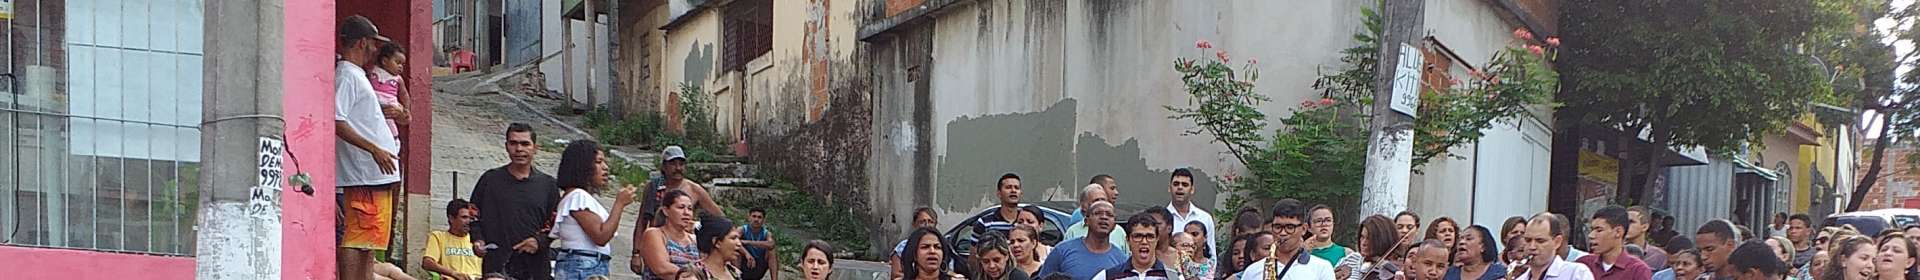 Projeto Missão nos Bairros gera resultados em Paul, Vila Velha (ES)